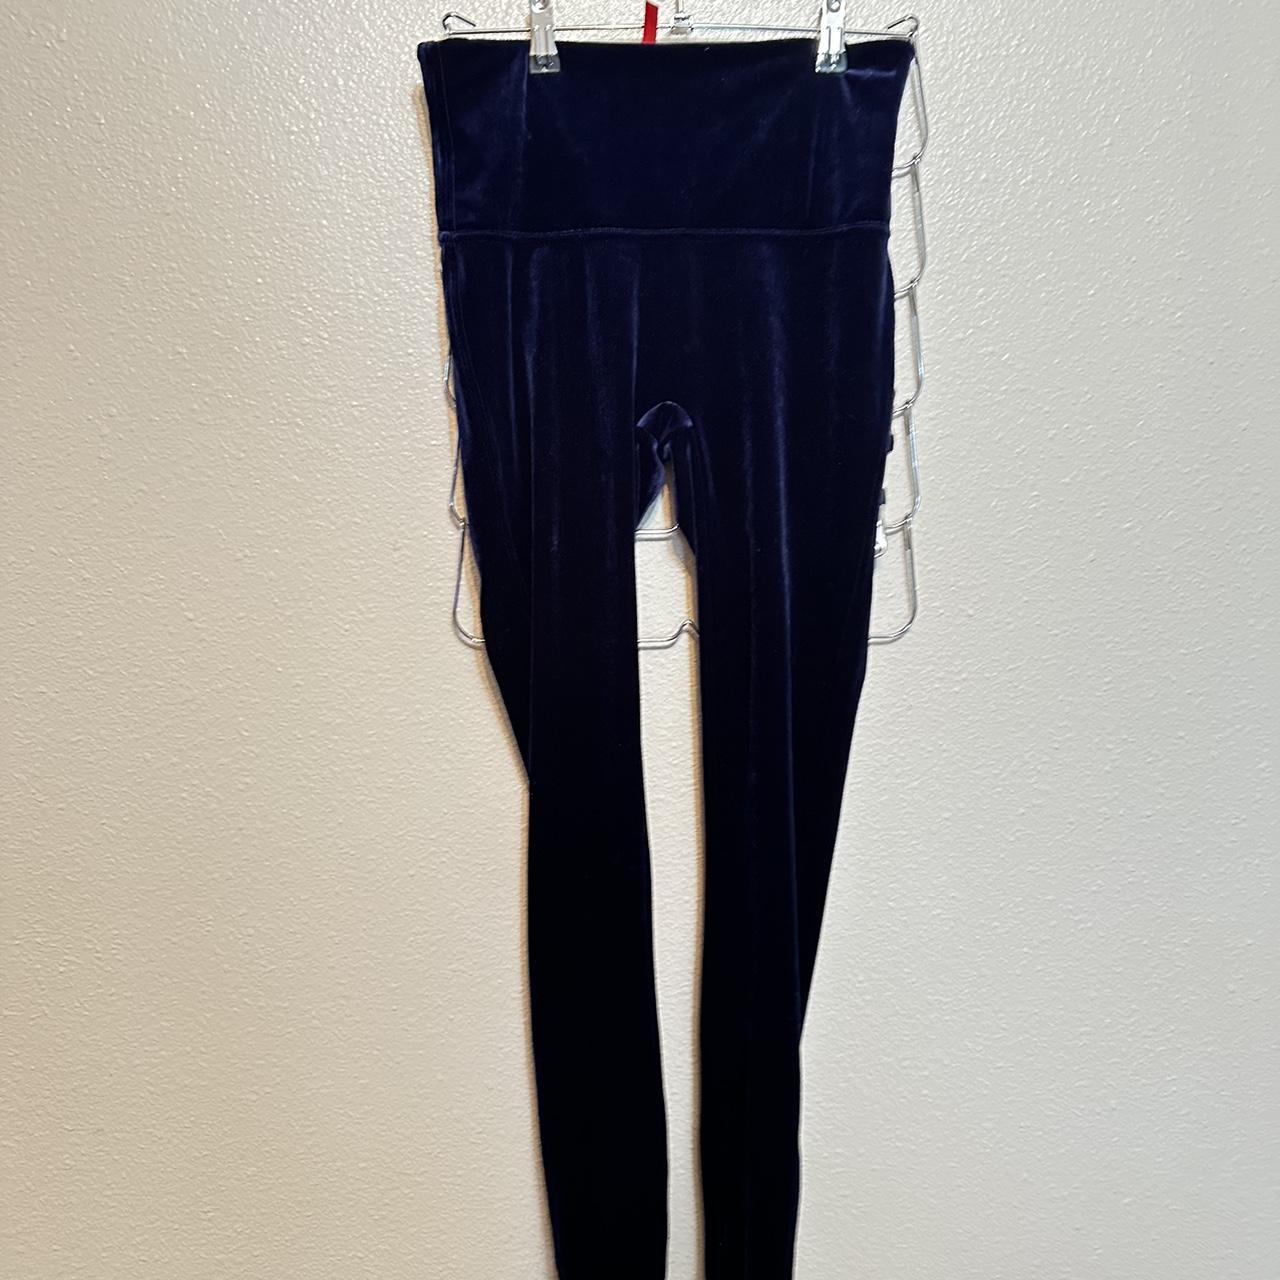 Spanx Blue Velvet Leggings Size large Perfect - Depop